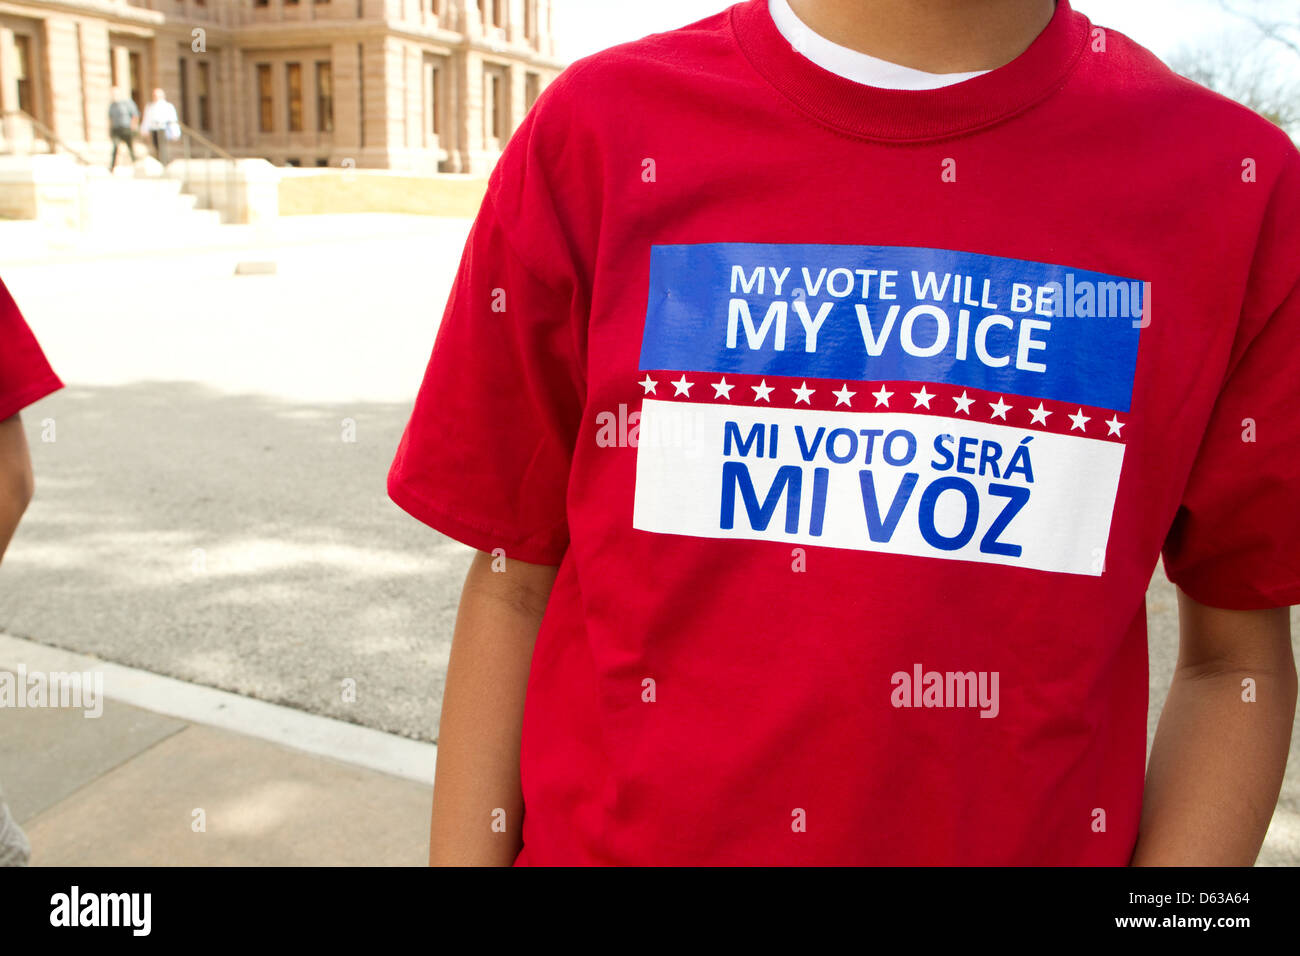 Ispanico giovane adulto indossa la t-shirt con messaggio bilingue in inglese e in spagnolo sating il suo voto nella sua voce Foto Stock